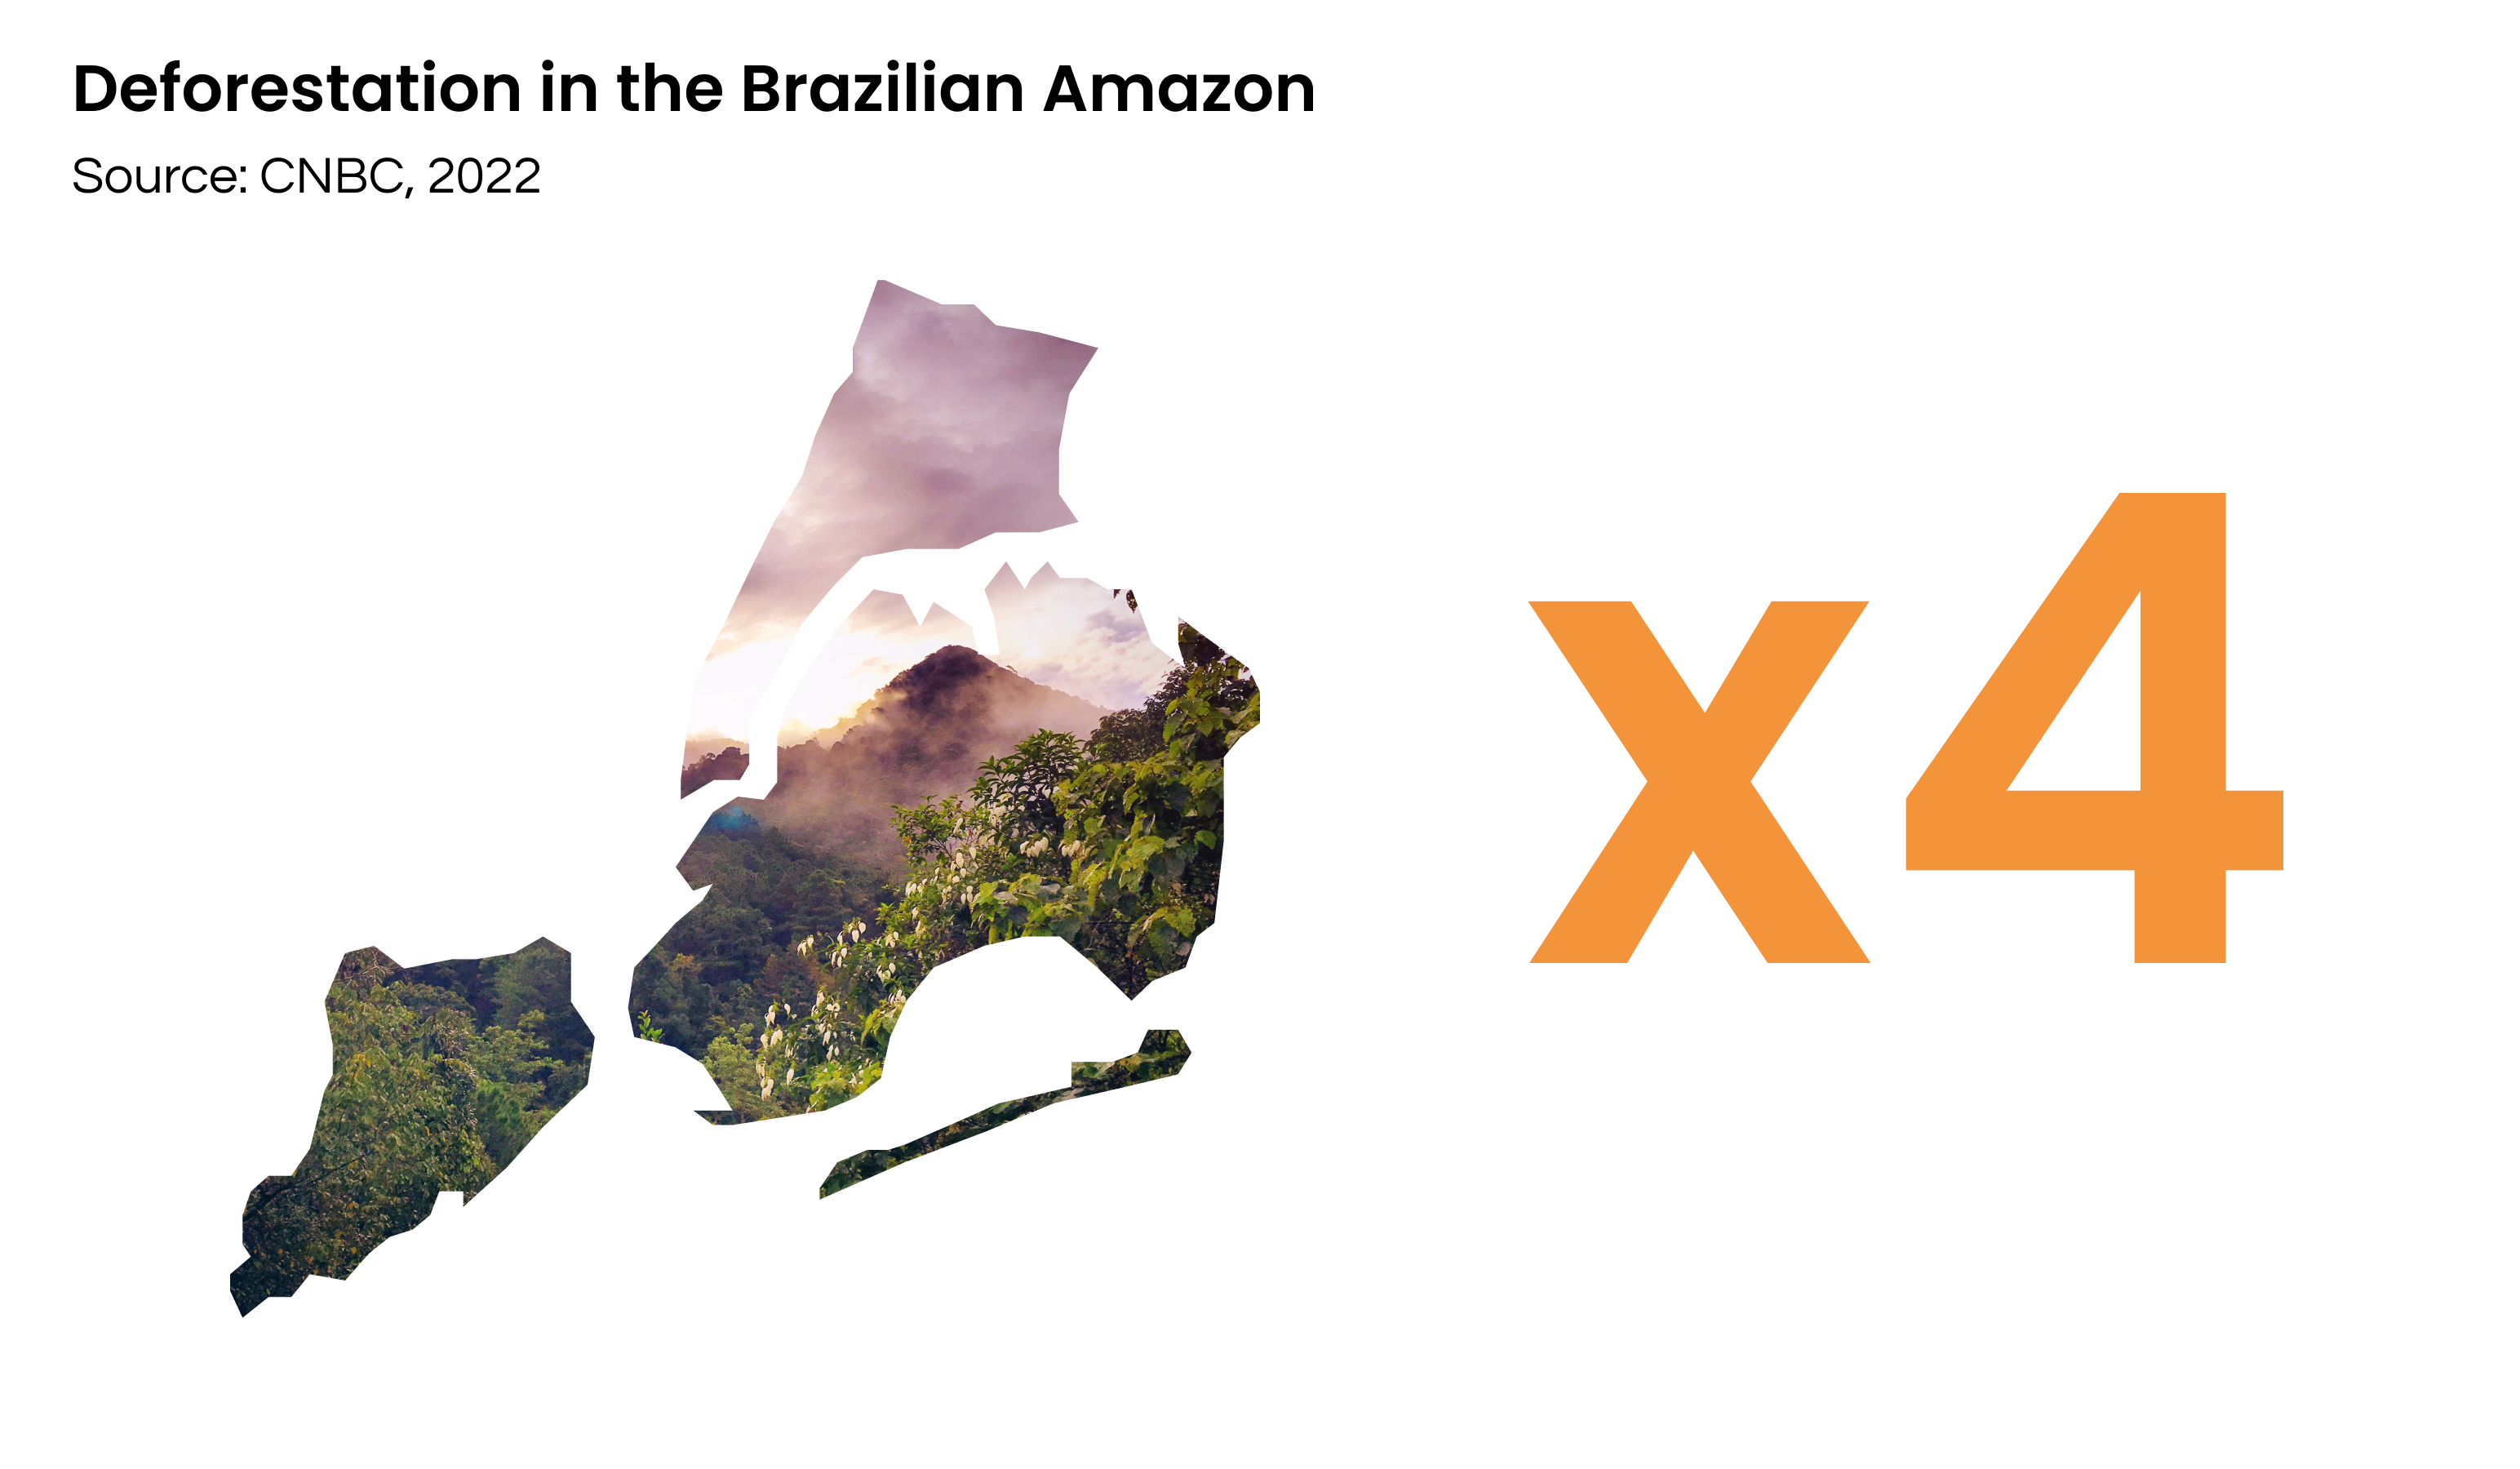 Figure 3. Amazon rainforest